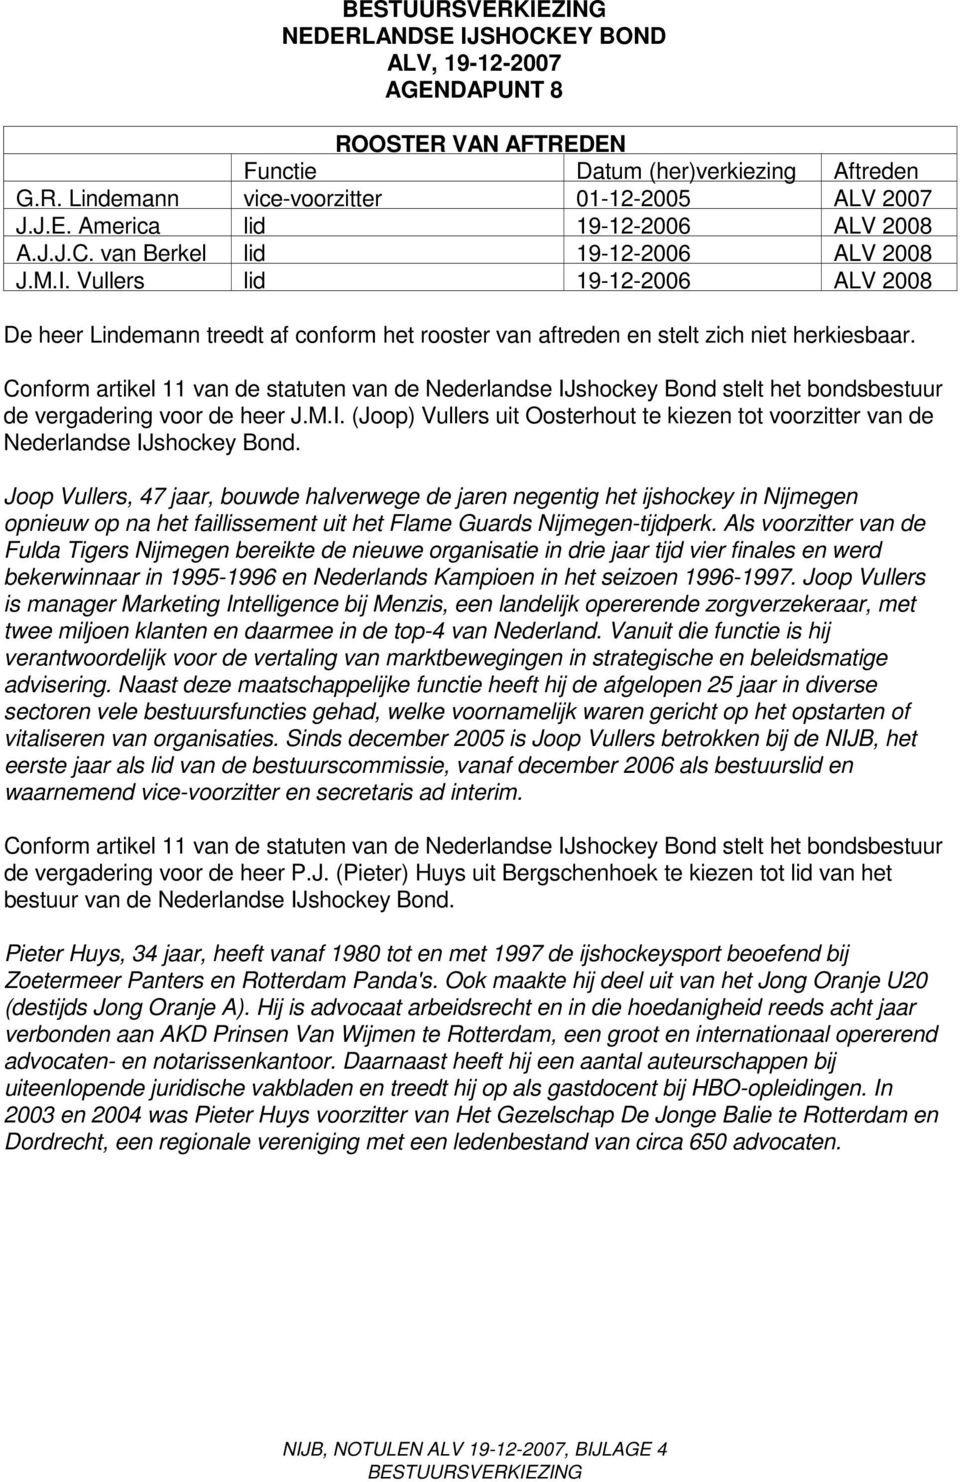 Conform artikel 11 van de statuten van de Nederlandse IJshockey Bond stelt het bondsbestuur de vergadering voor de heer J.M.I. (Joop) Vullers uit Oosterhout te kiezen tot voorzitter van de Nederlandse IJshockey Bond.